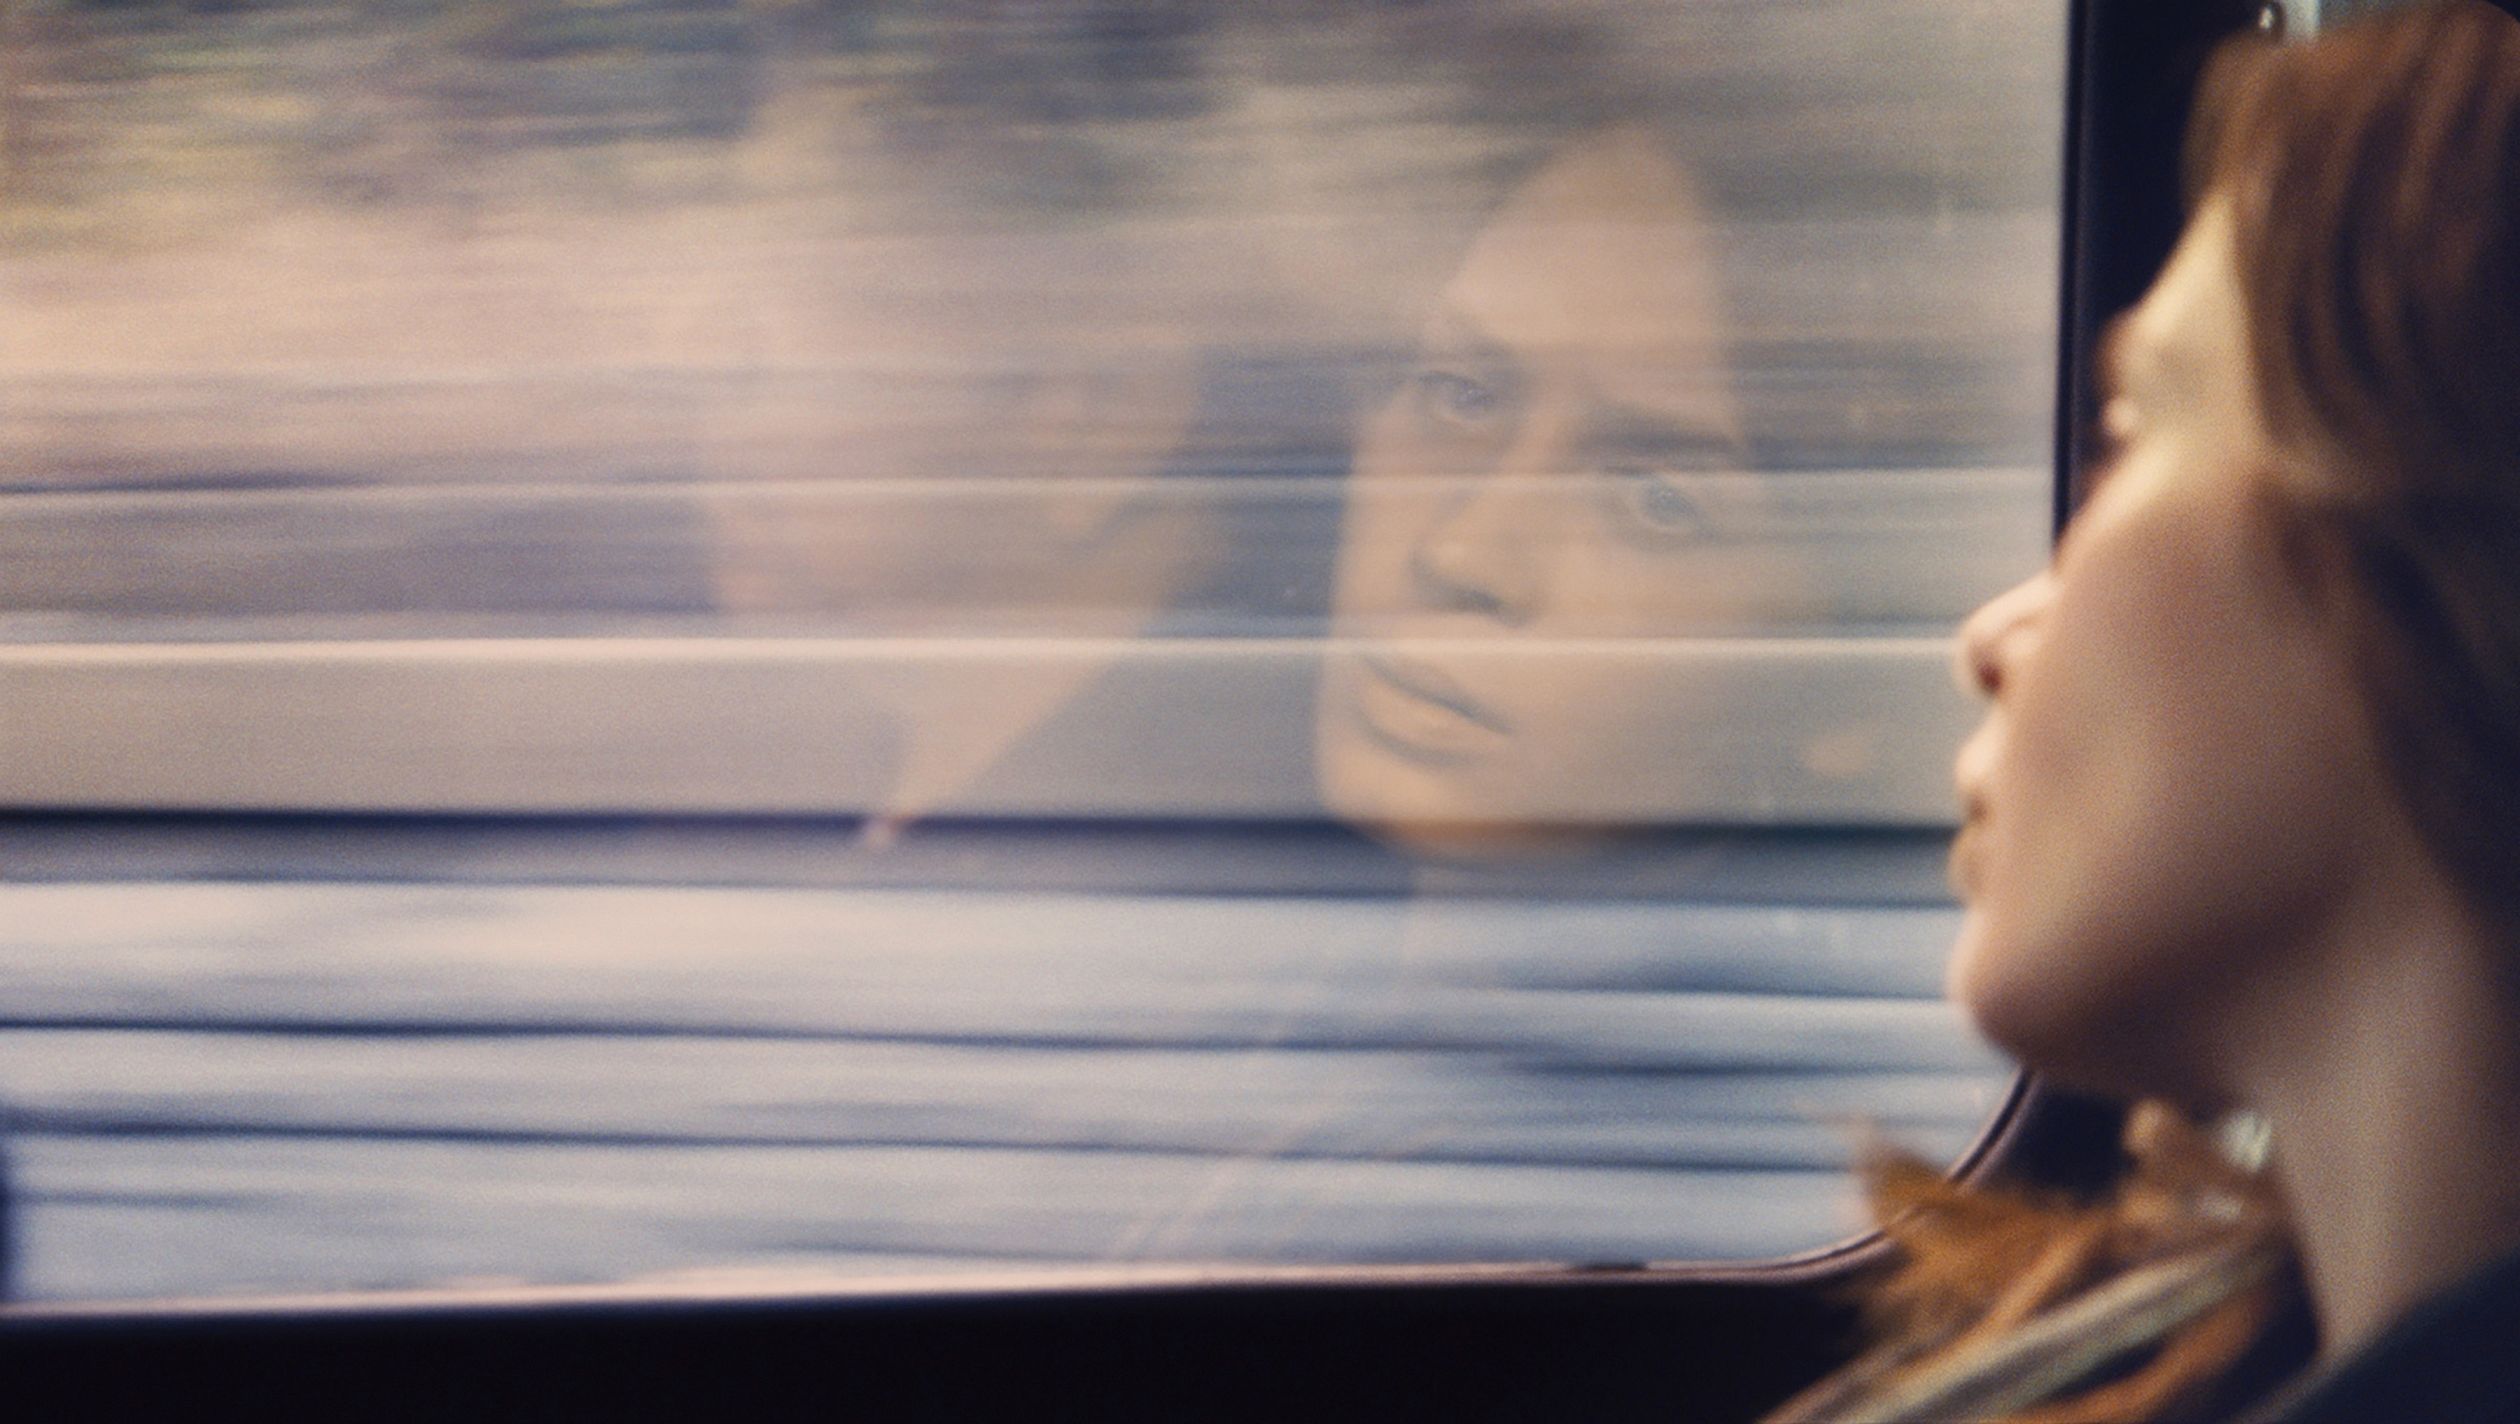 Вагон вошла она улыбнулась из окна. Девушка в поезде. Девушка в поезде у окна. Девушка в окне вагона поезда. Женщина у окна поезда.